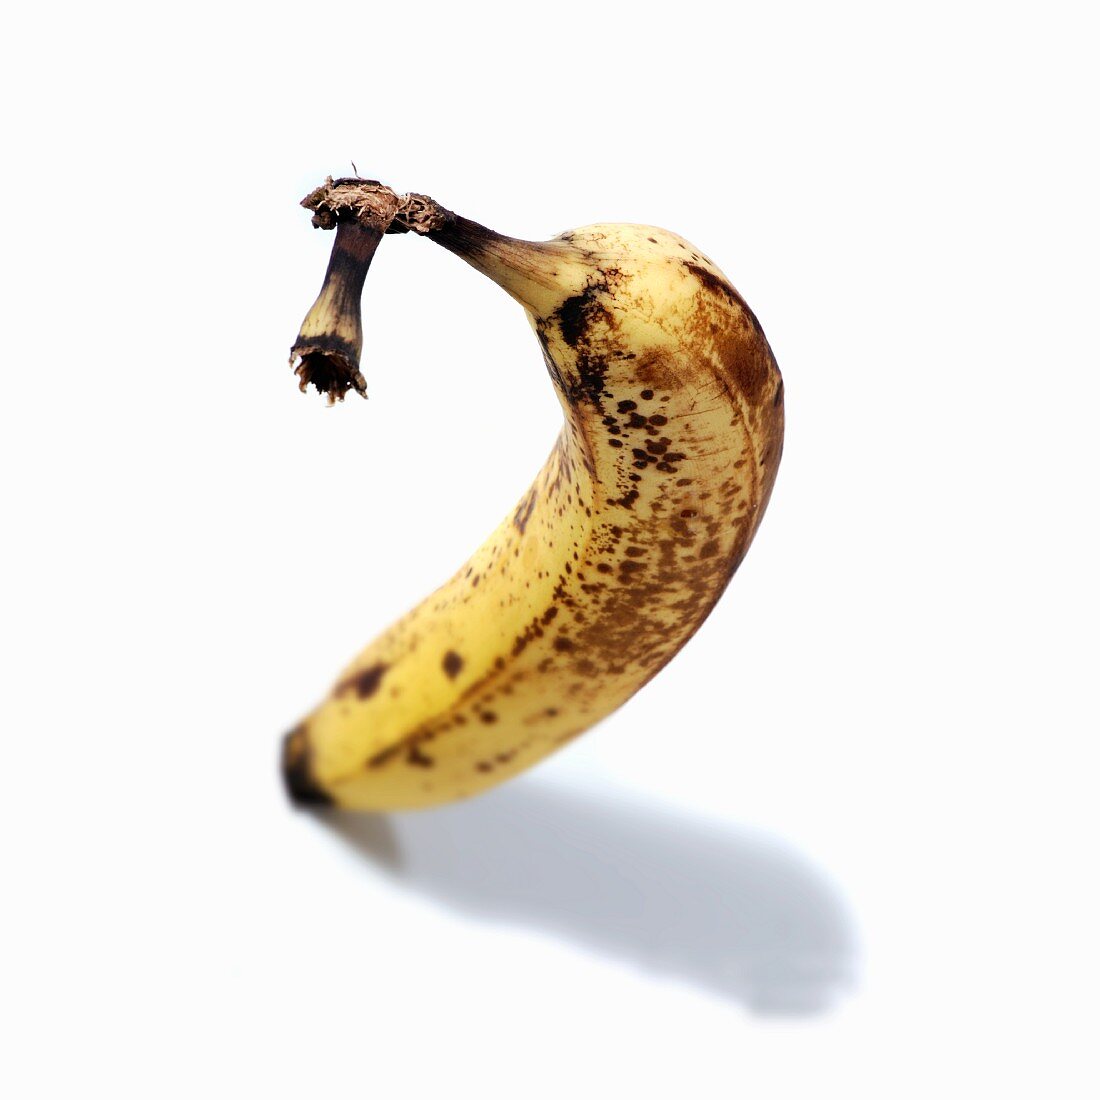 A ripe banana